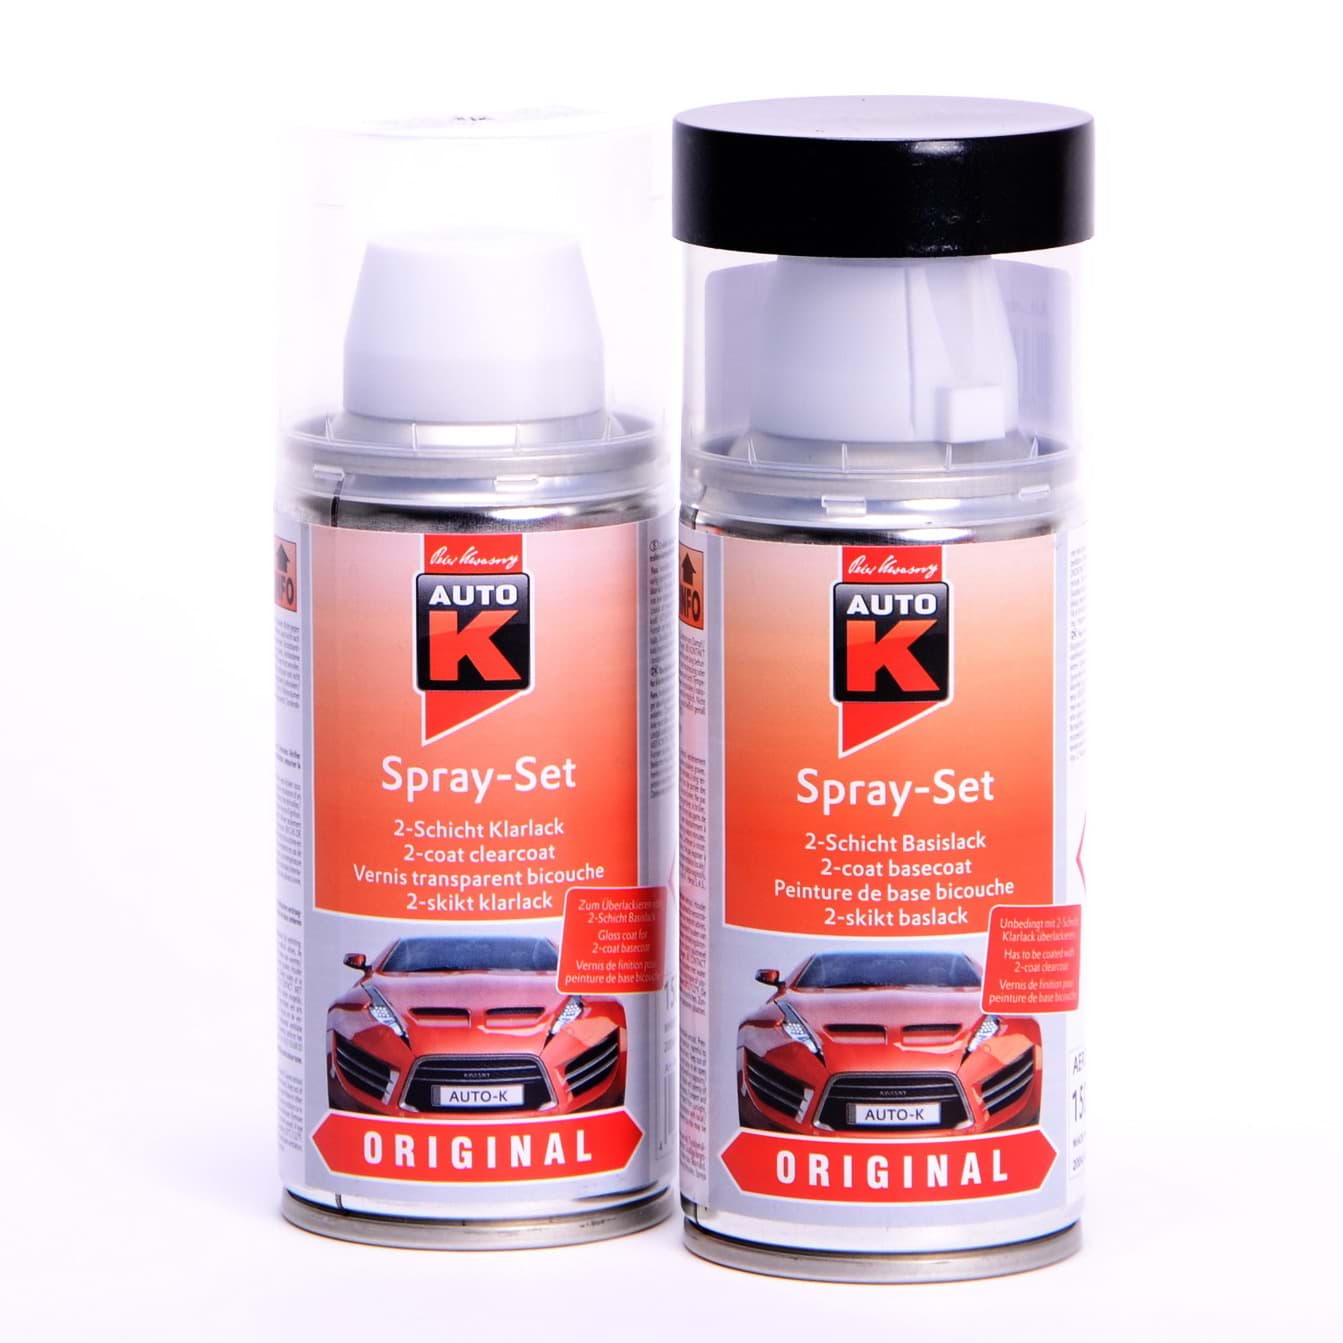 Afbeelding van Auto-K Spray-Set Autolack für Opel 282 Polarmeerblau met 21393